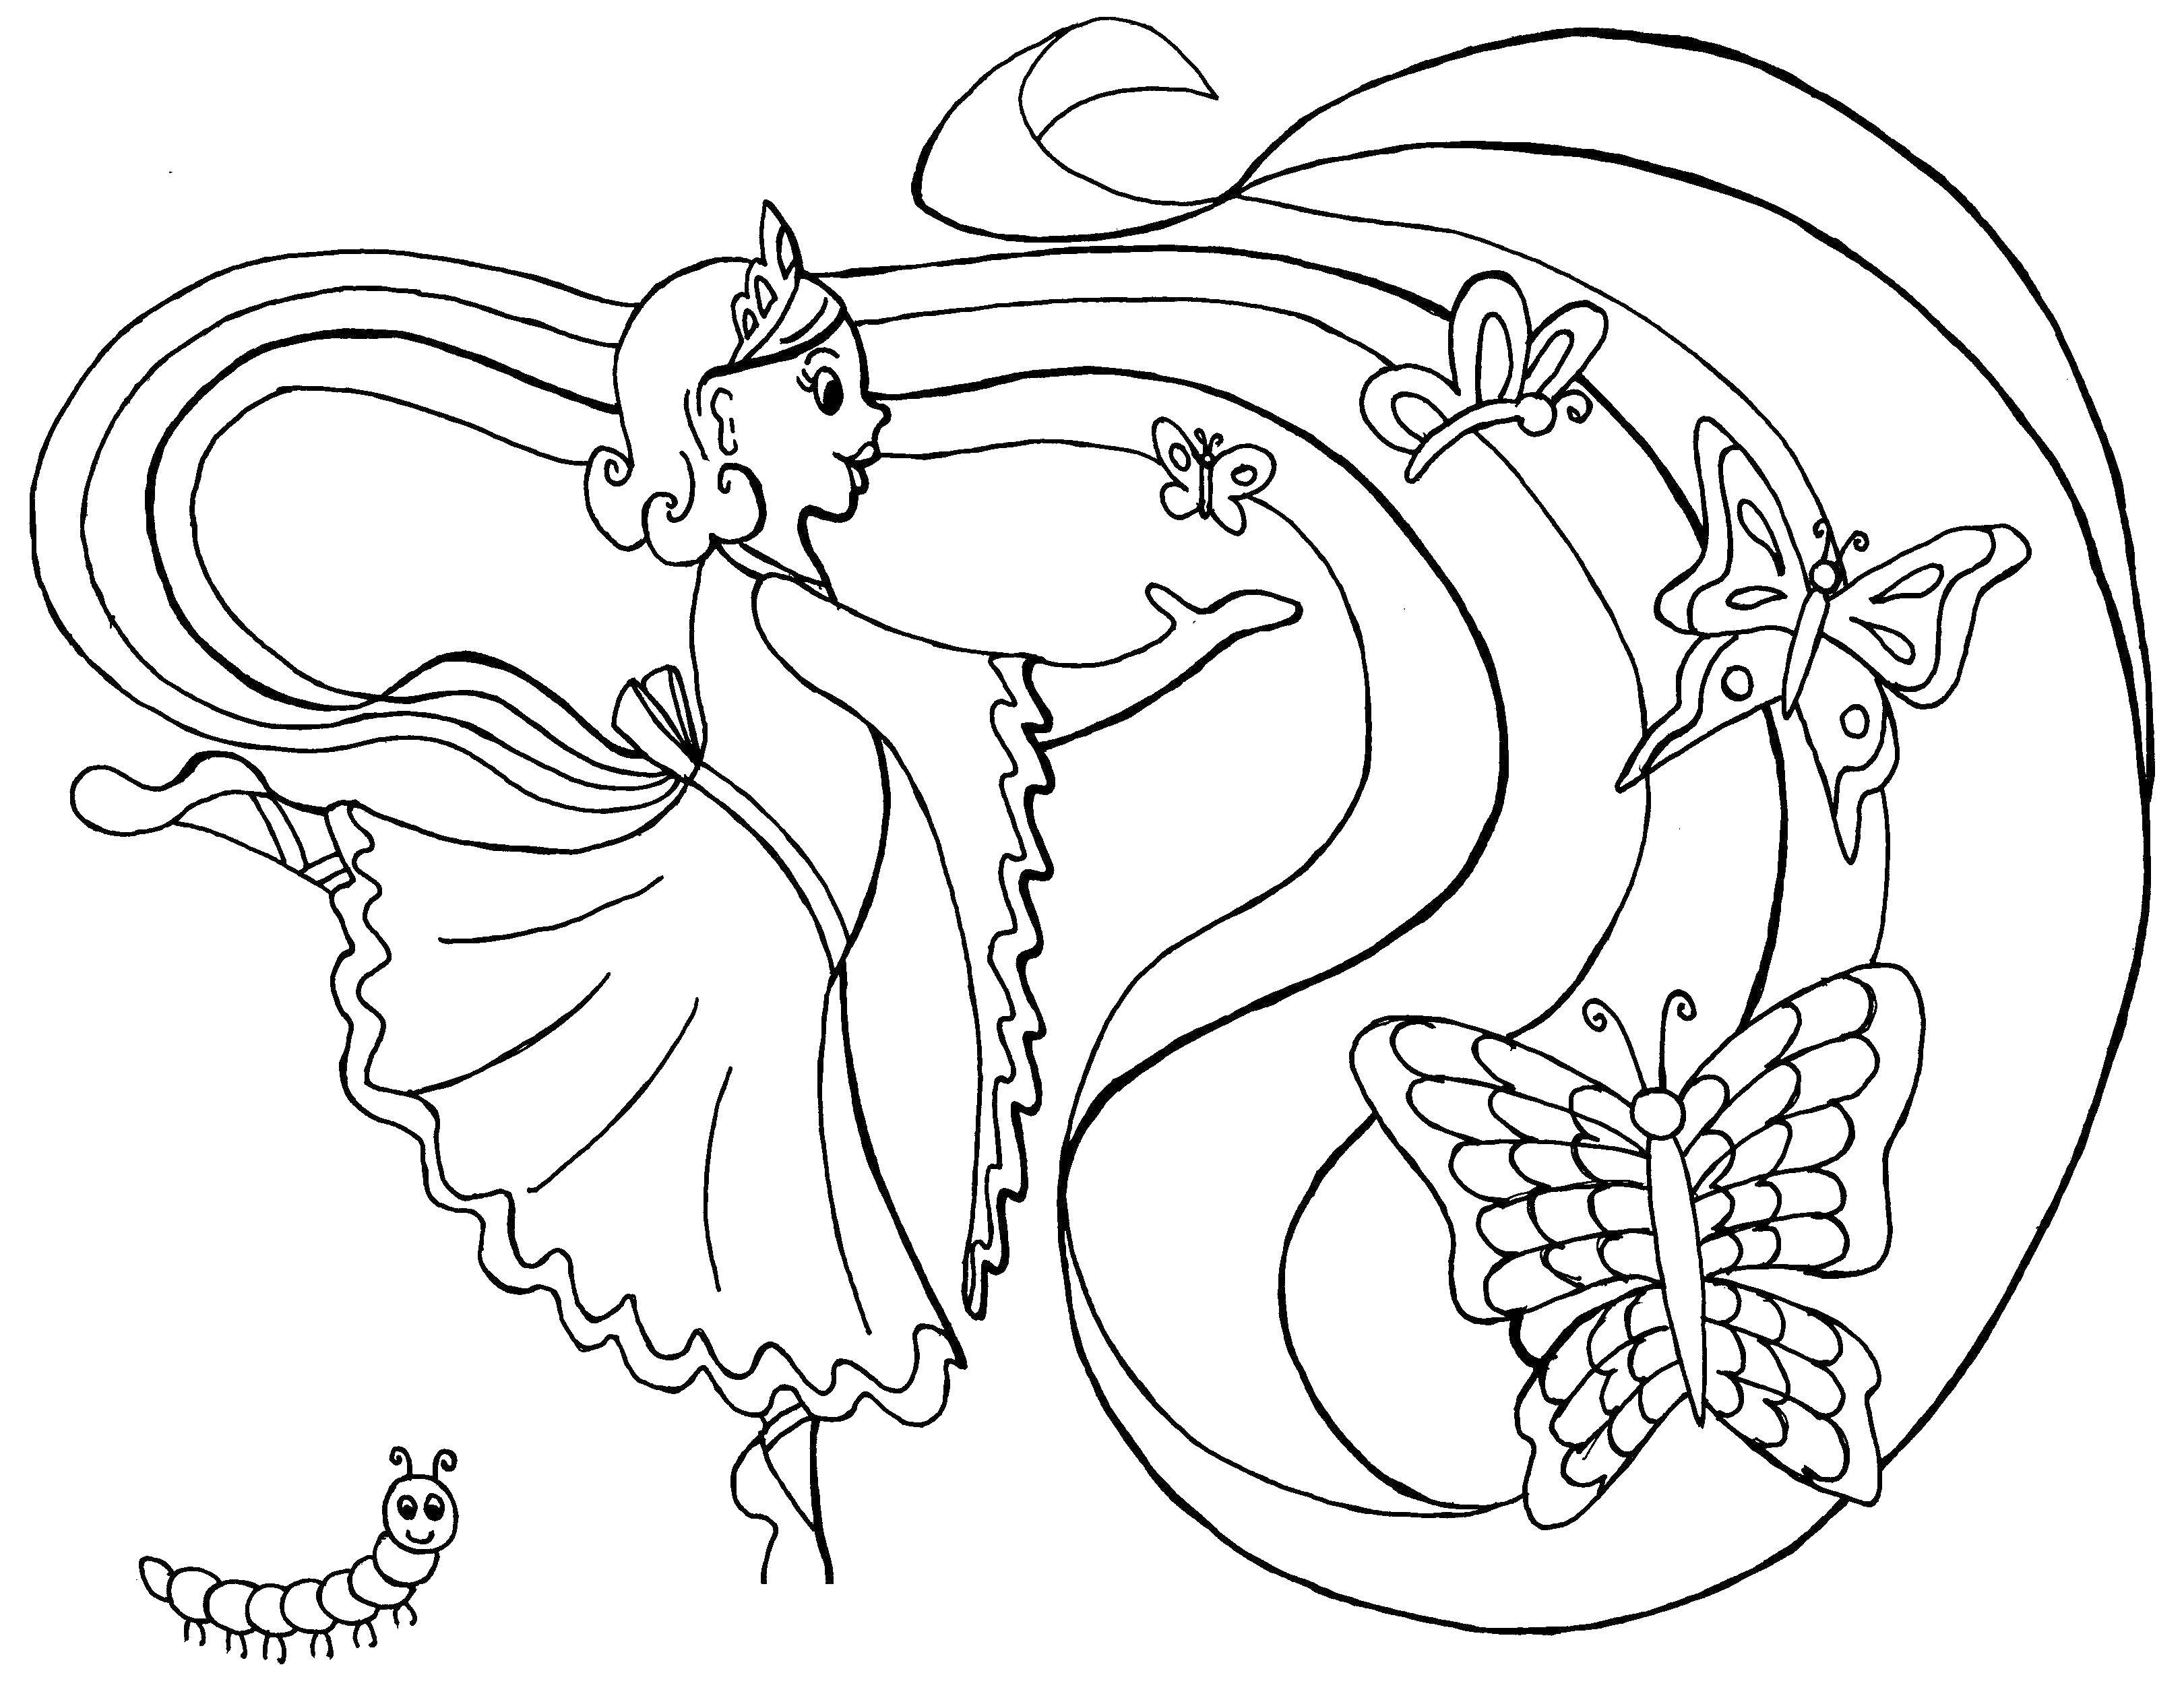 Розмальовки  Принцеса з метеликами. Завантажити розмальовку принцеси, метелики.  Роздрукувати ,Принцеси,